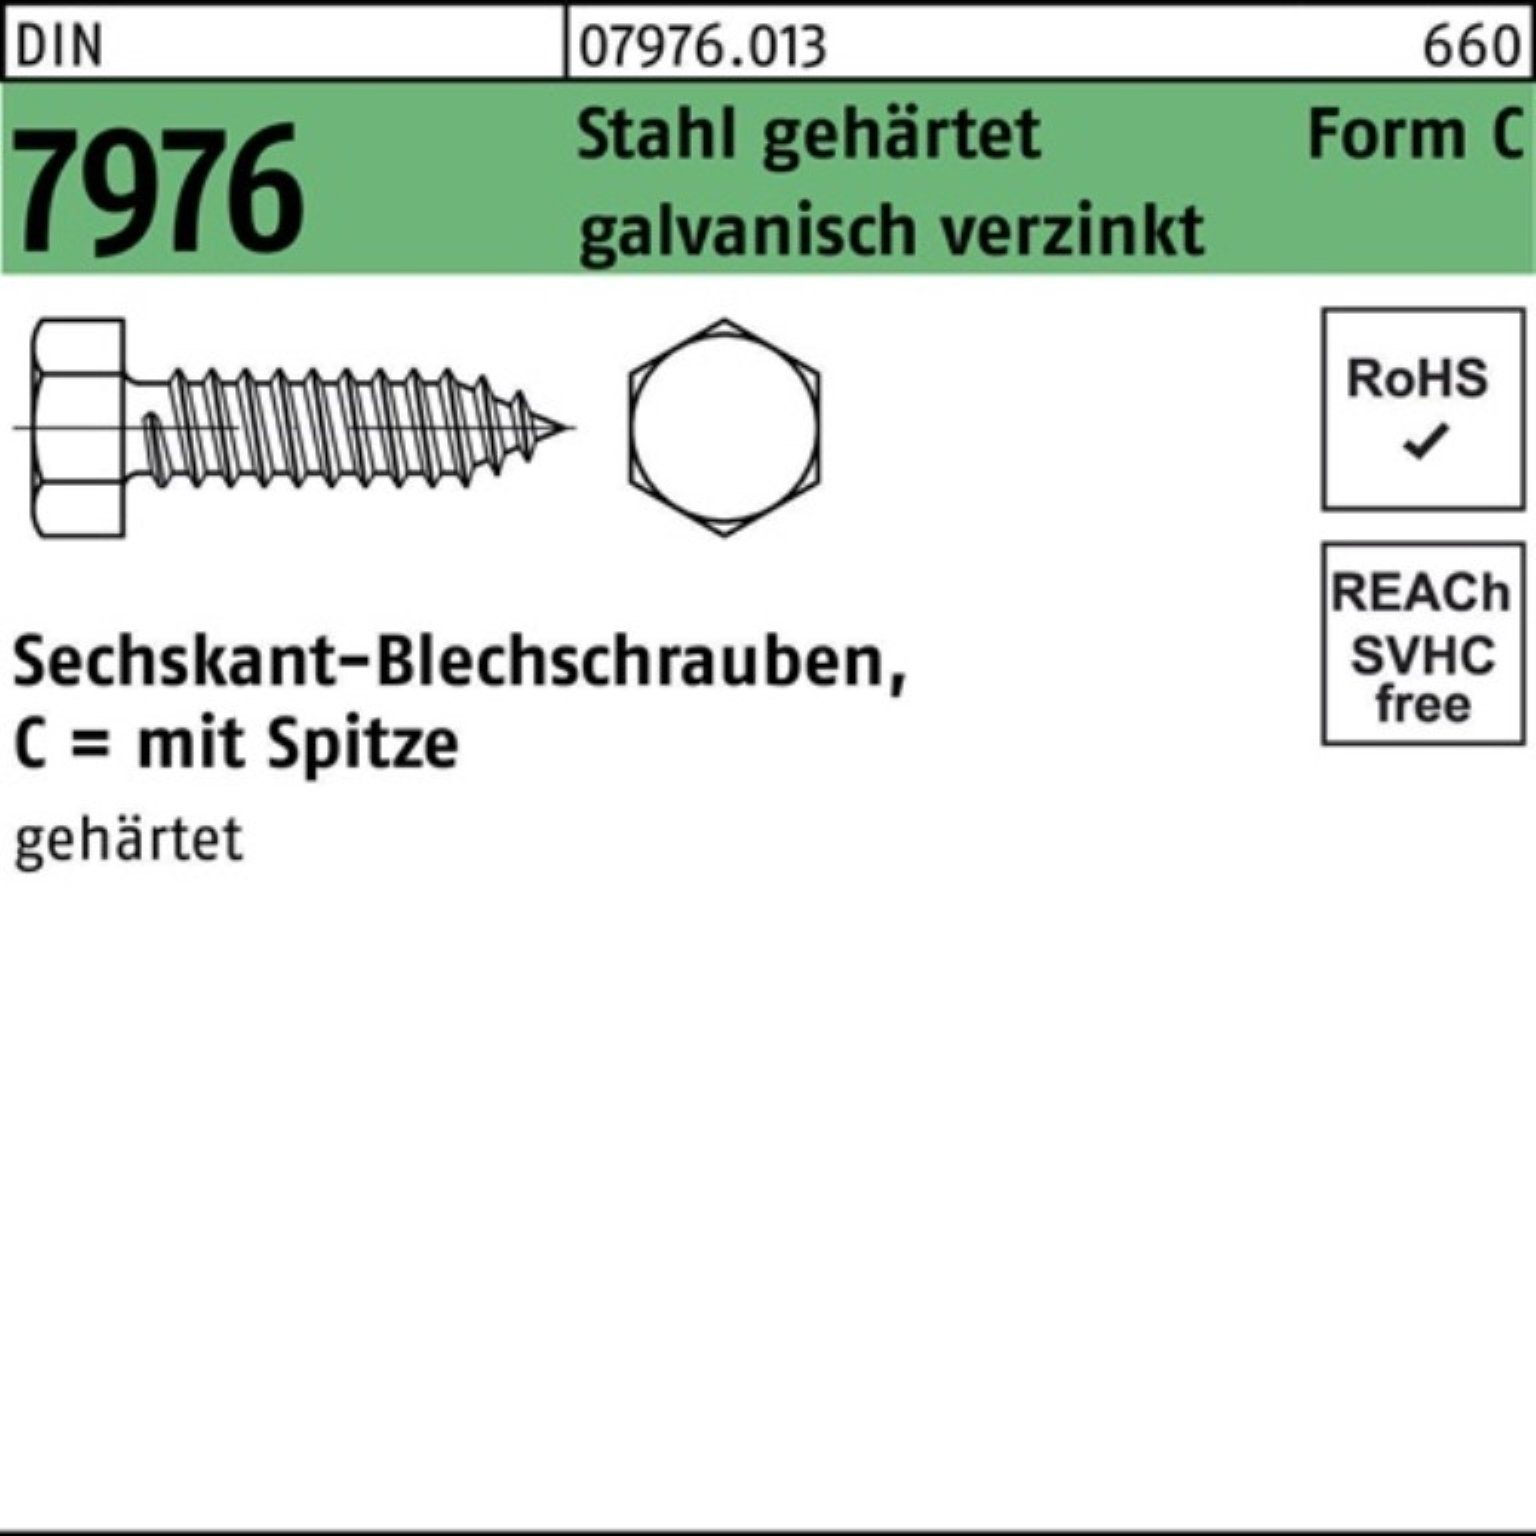 7976 DIN Reyher Pack Blechschraube Stahl Sechskant/Spitze Blechschraube geh. C 250er 5,5x60